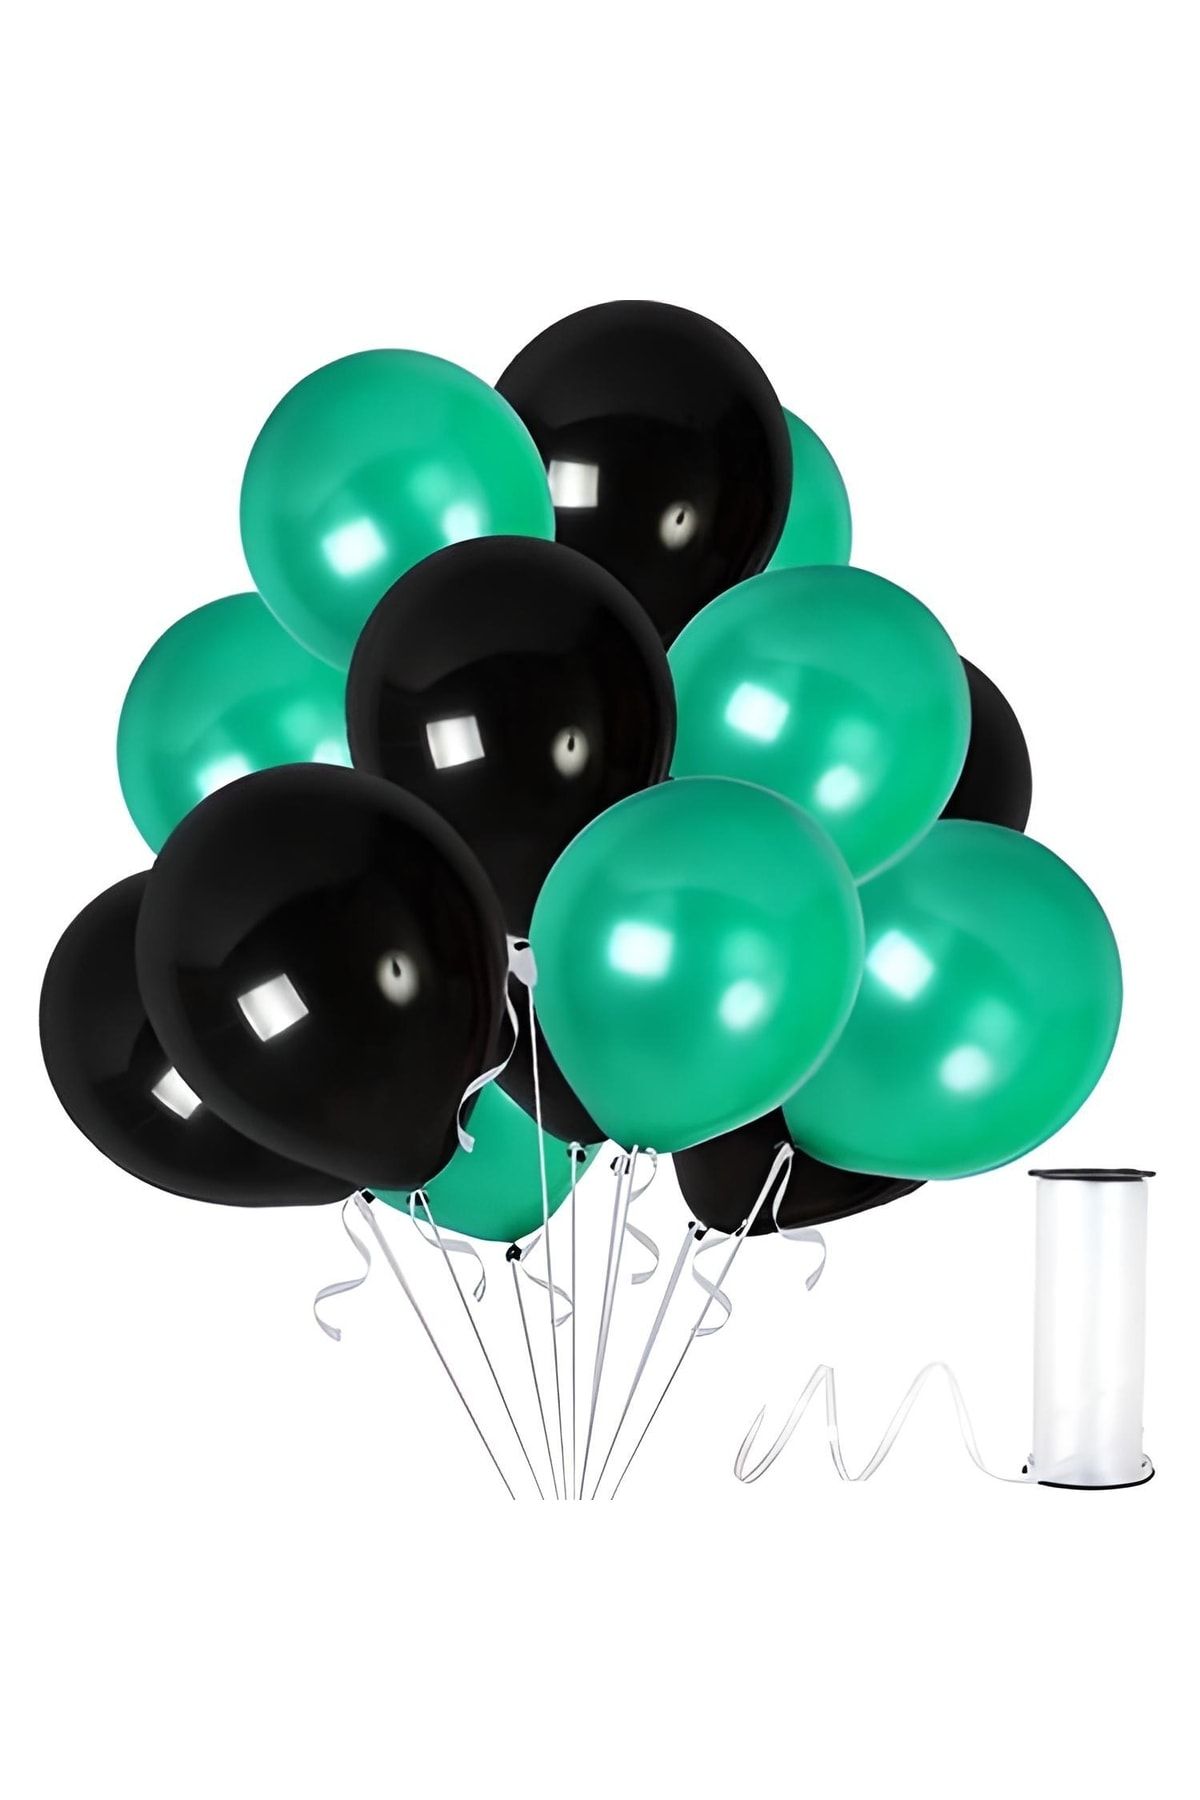 HKNYS 100 Adet Metalik Balon (koyu Yeşil - Siyah )- Helyum Gazı Uyumludur.-5 Metre Balon Zıncırı Hediye